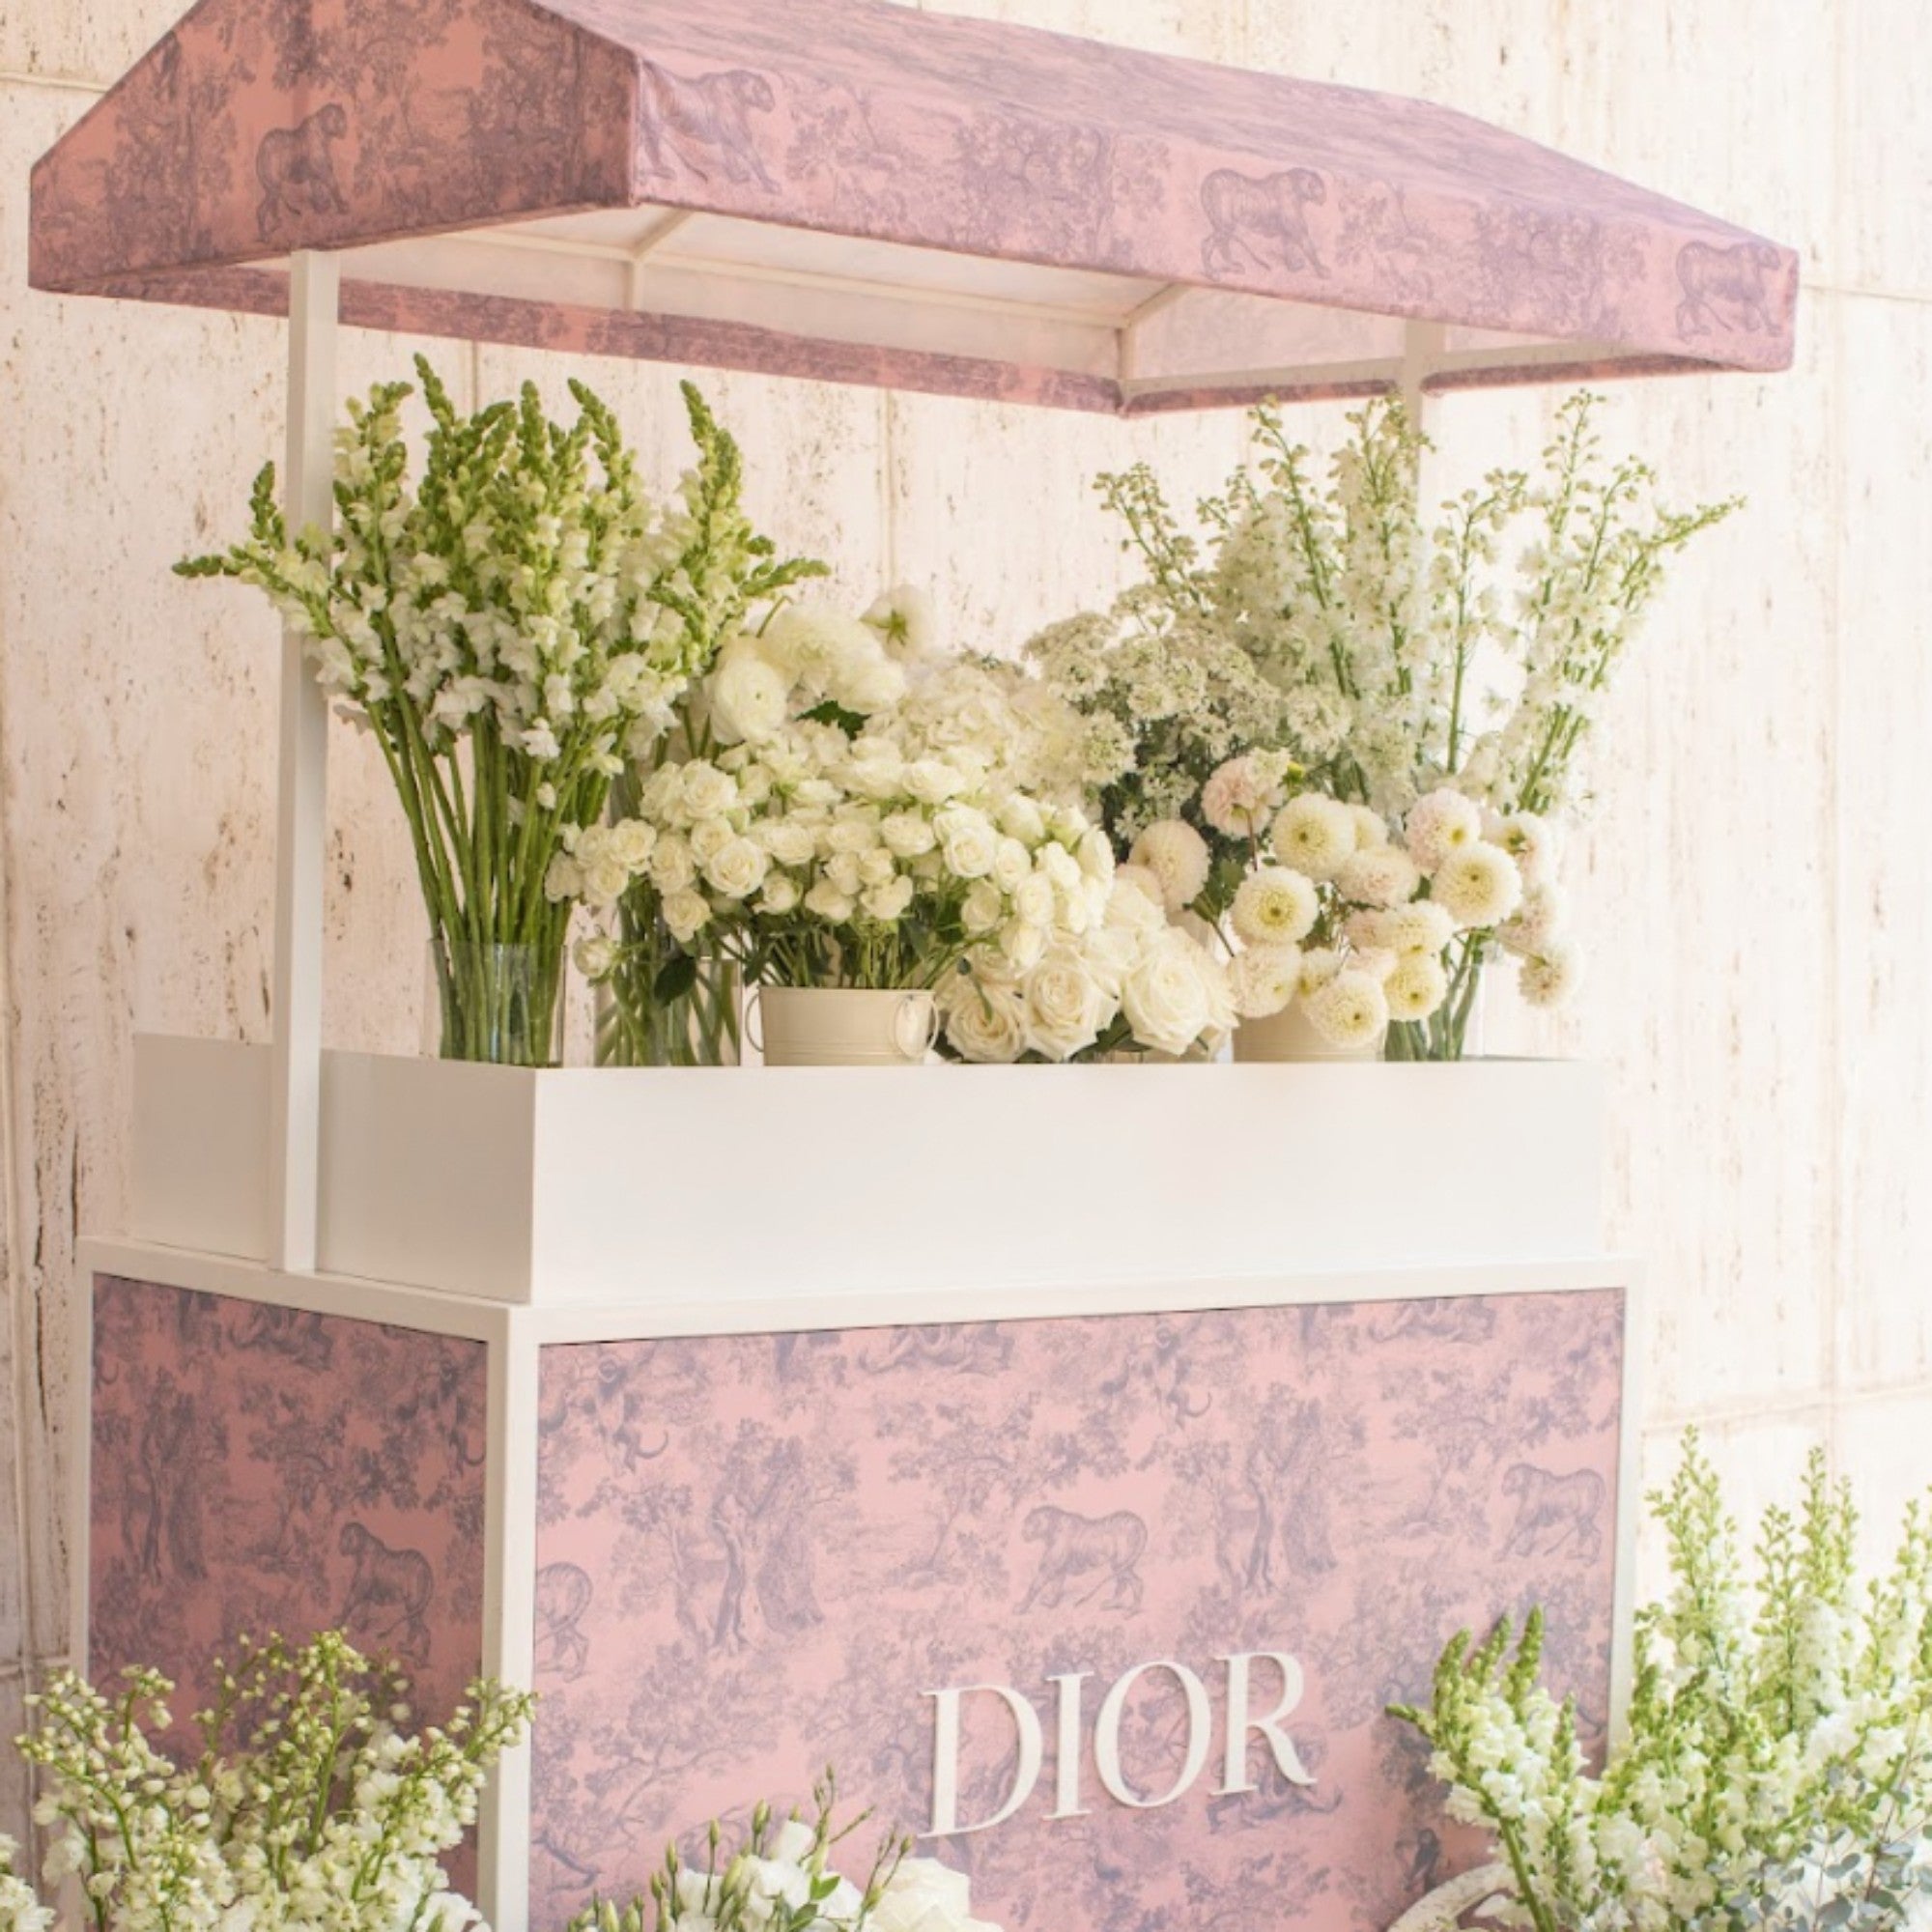 Dior Floral Installation | Viola Floral